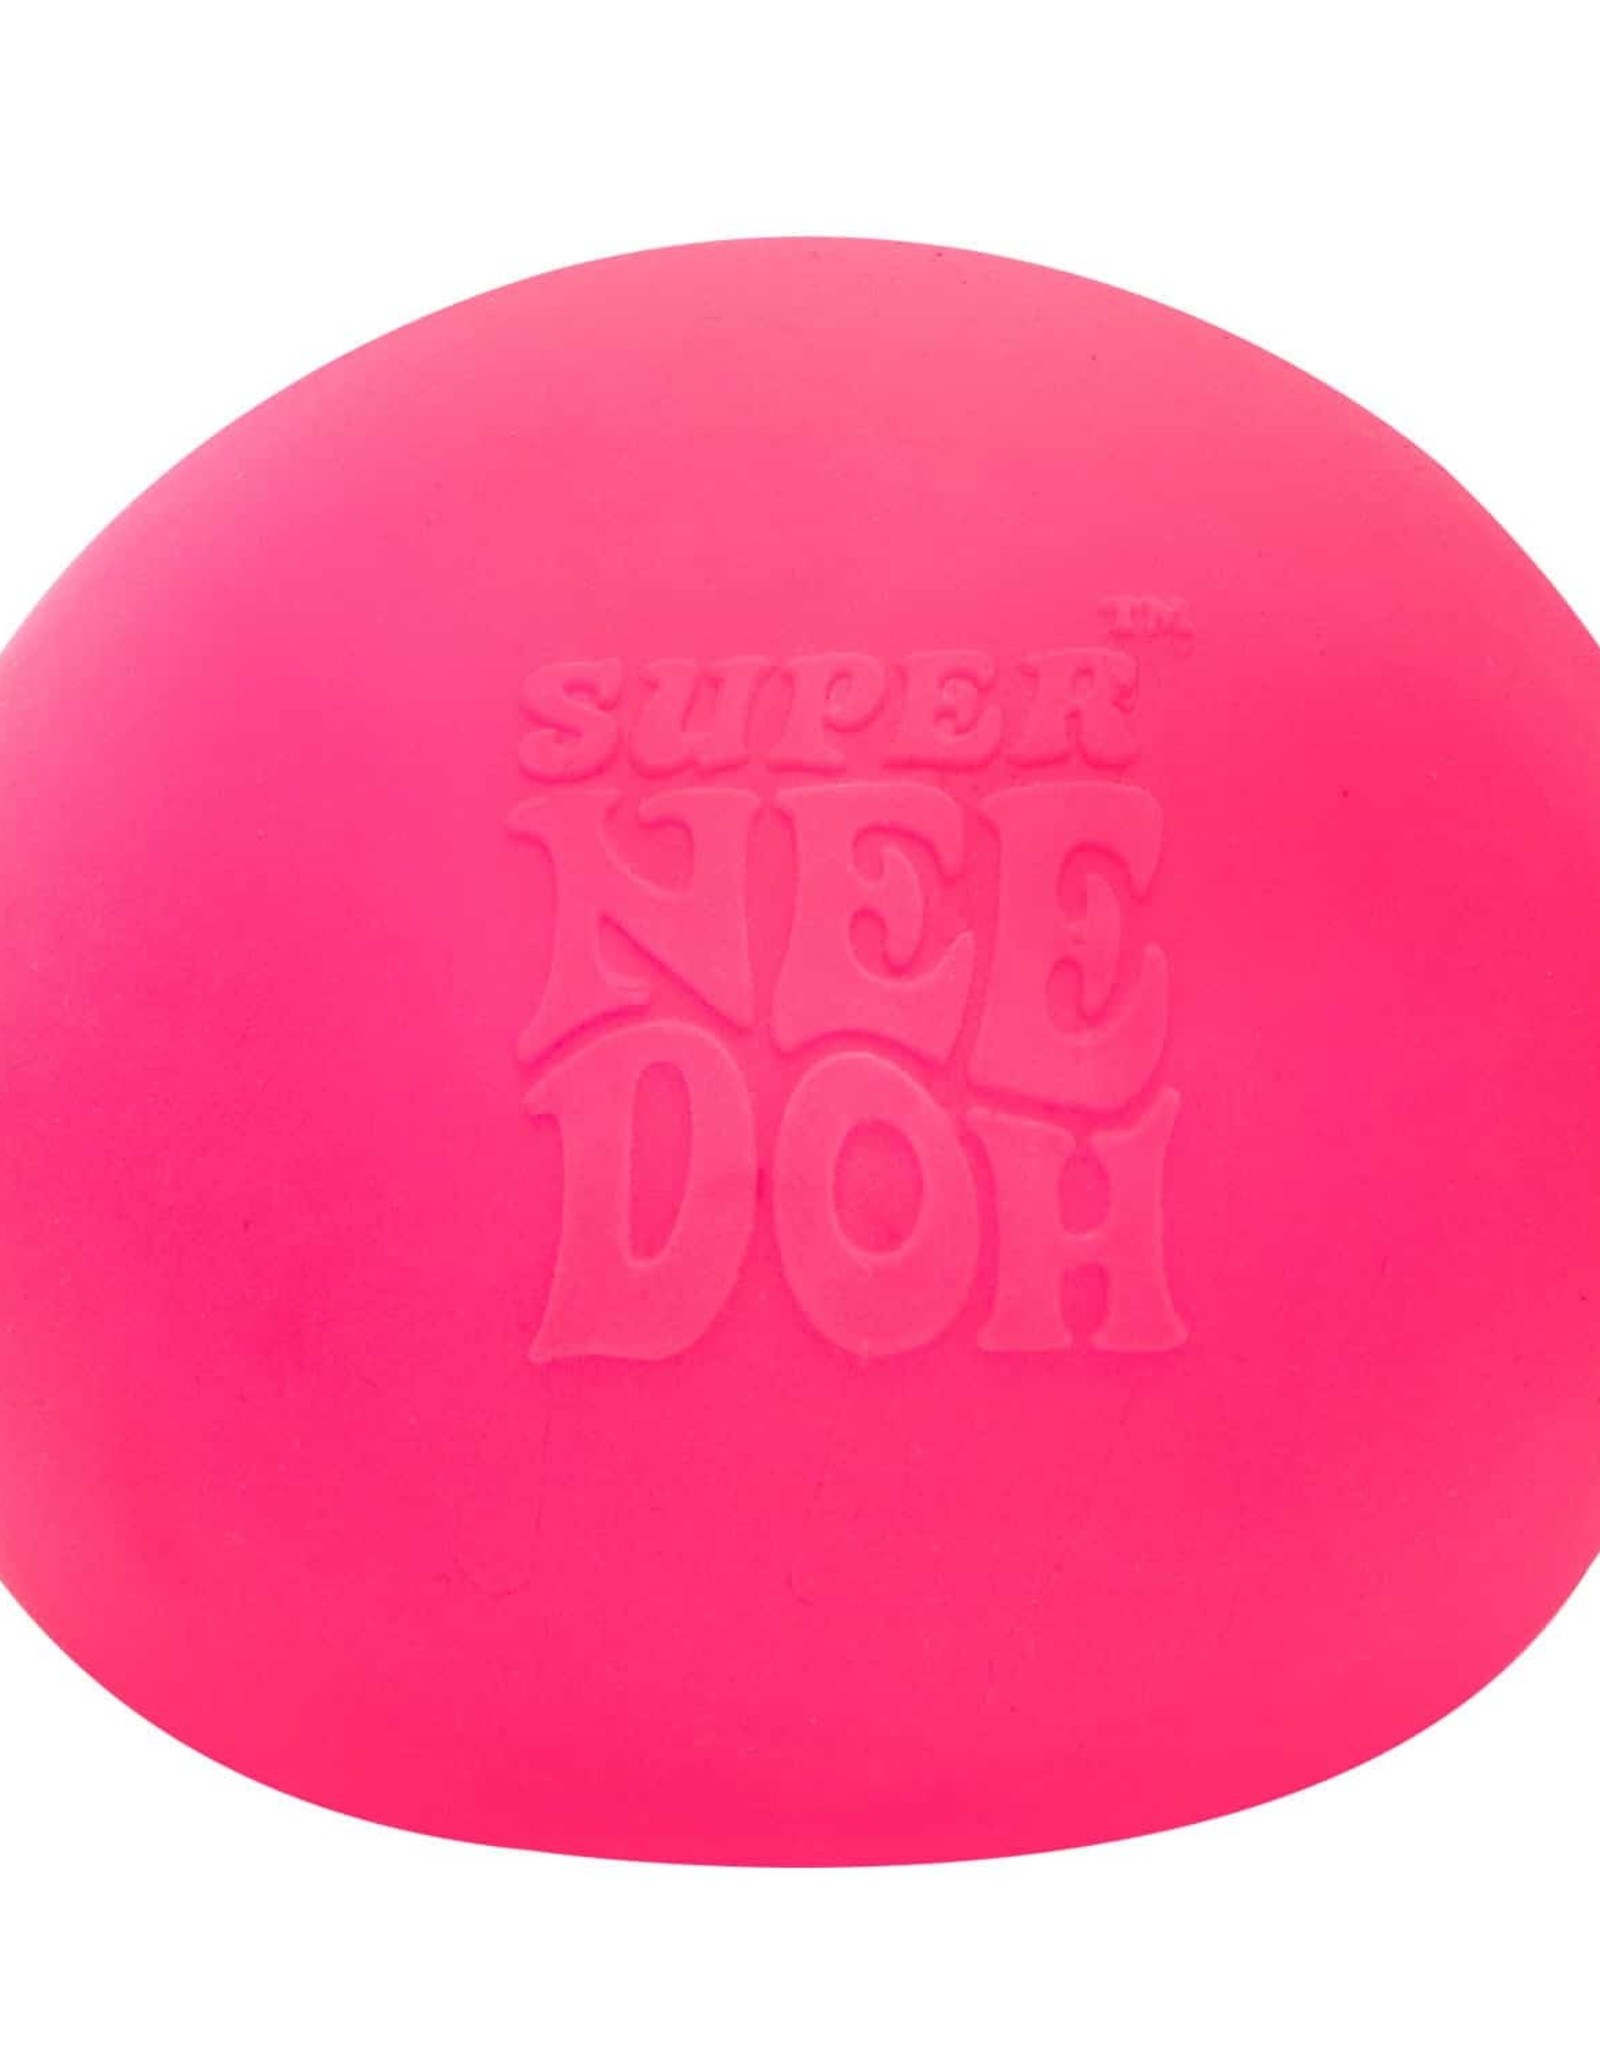 Schylling Super Nee Doh Ball